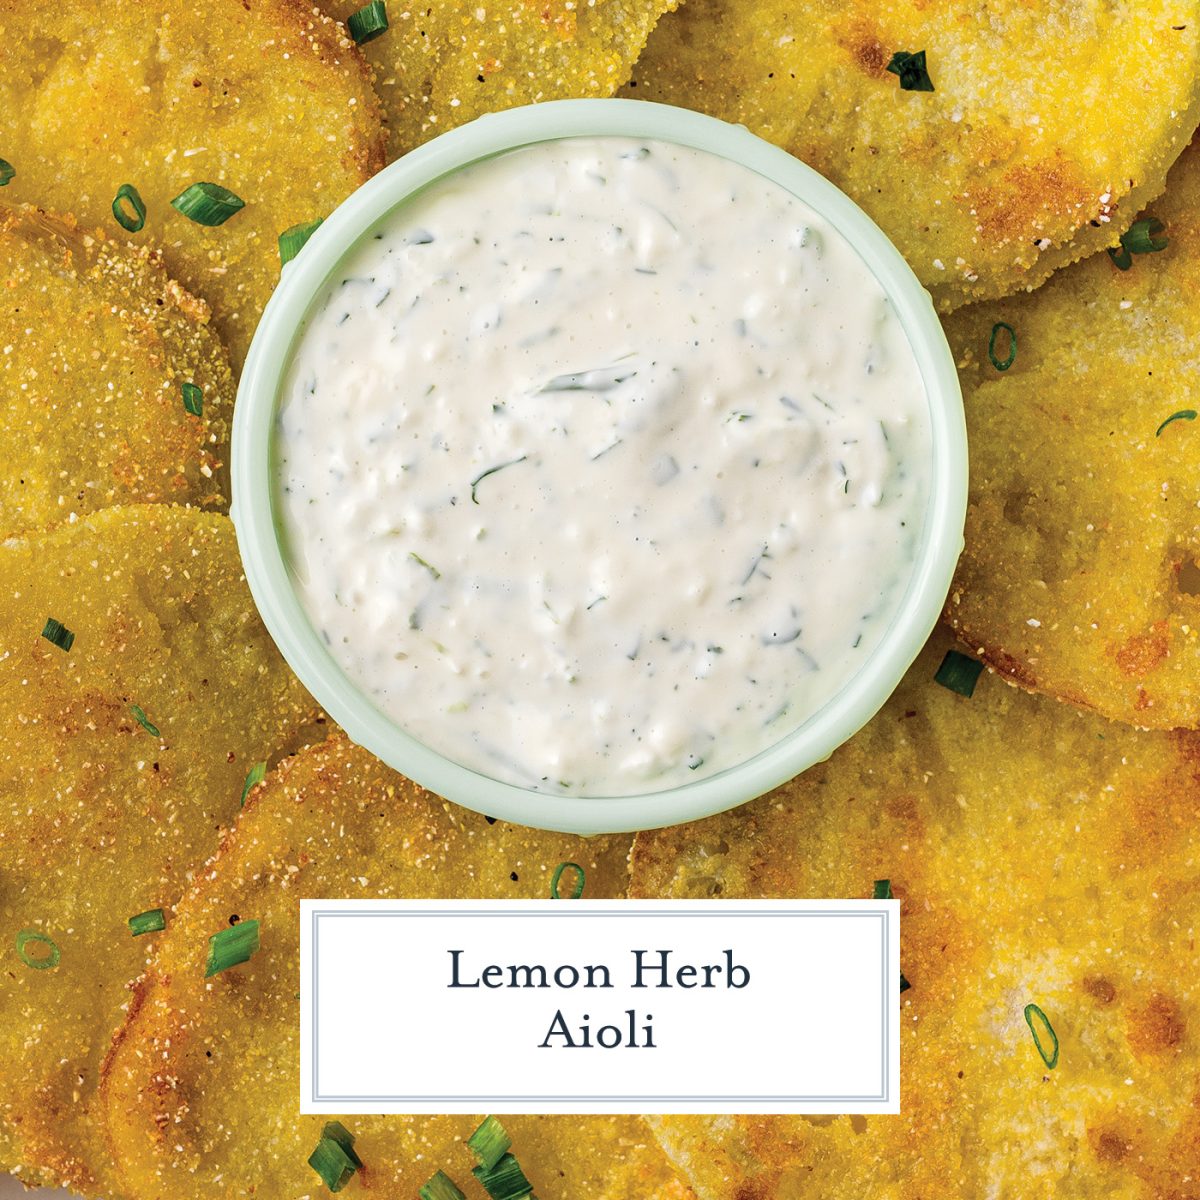 Lemon-Shallot Herb Sauce